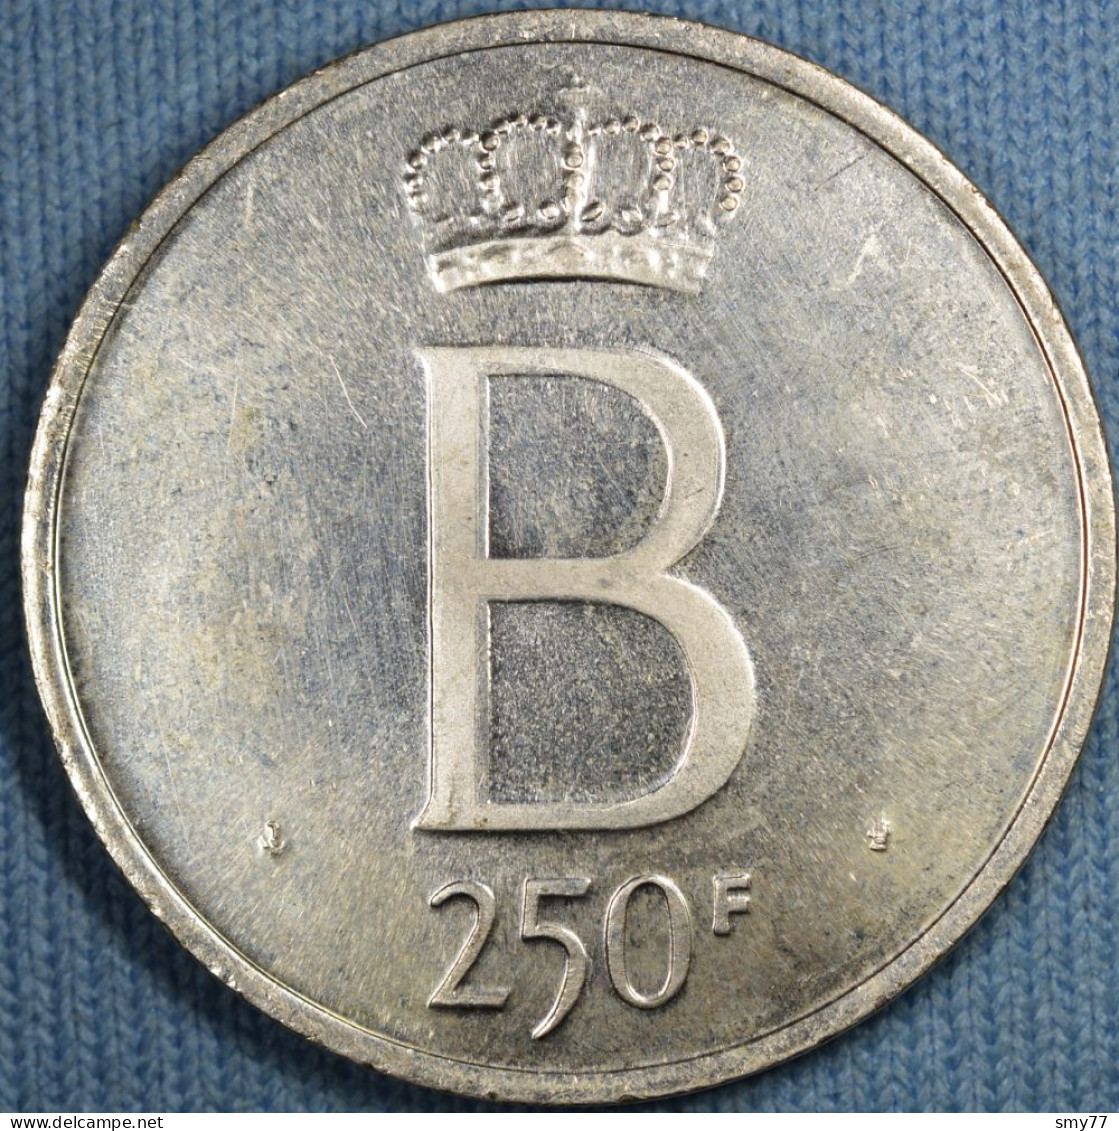 Belgique • 250 Francs 1976 Fr • Tranche étoilée - Petit B - 5 Droit - Flan Poli • [24-266] - 250 Frank